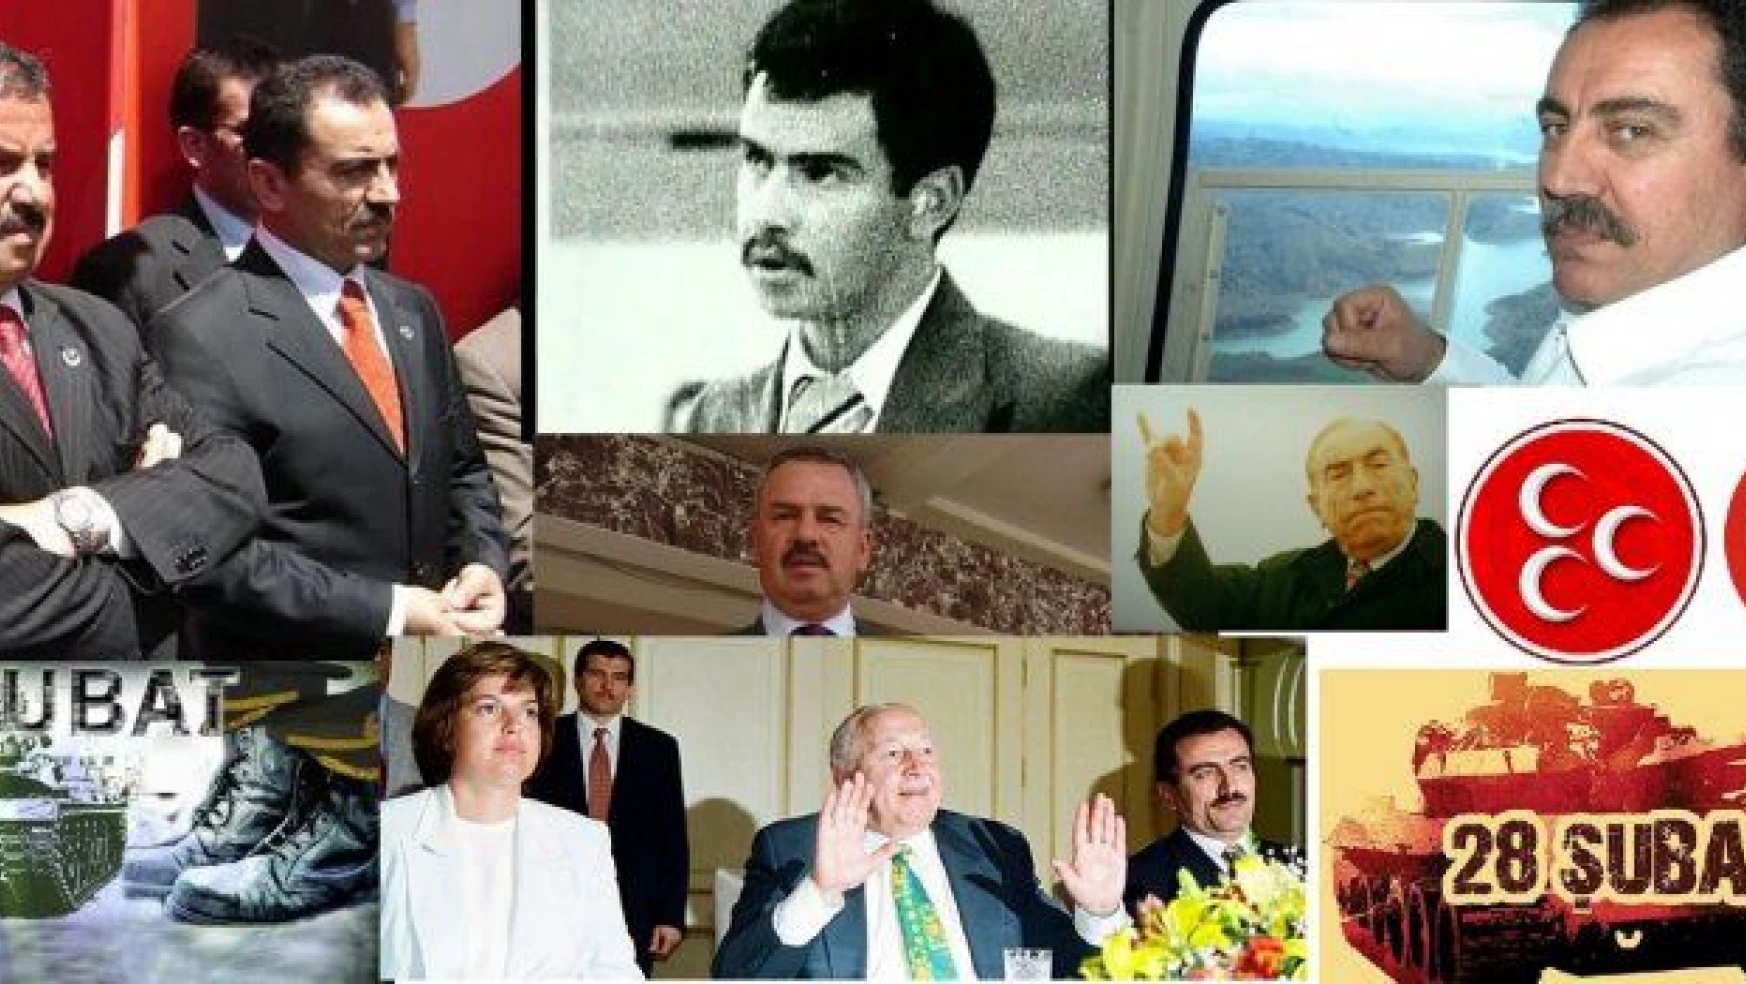 12 Eylül, 1991 seçimleri, 28 Şubat ile MHP ve BBP'ye dair şok açıklamalar